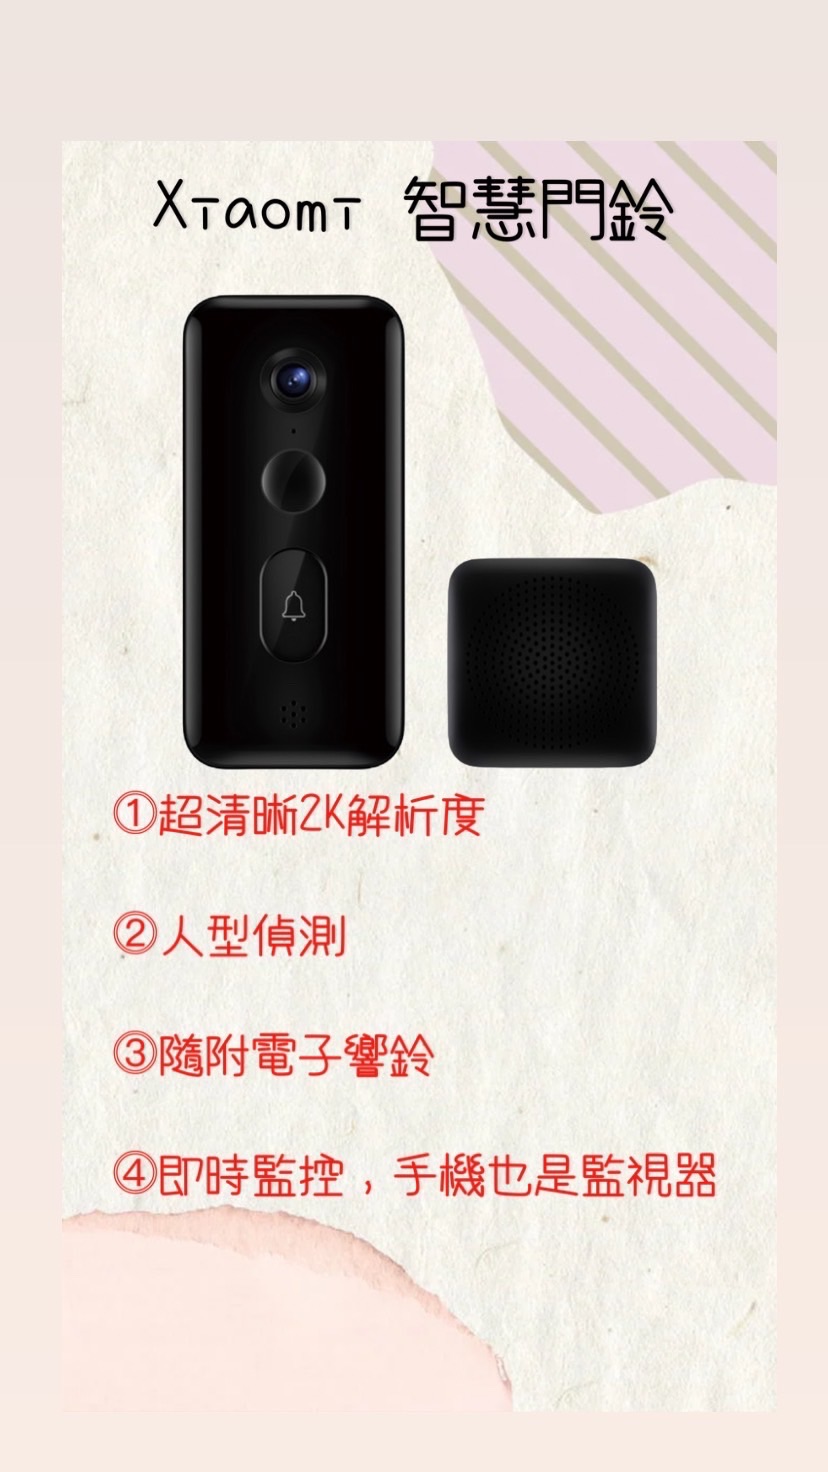 Xiaomi 智慧門鈴